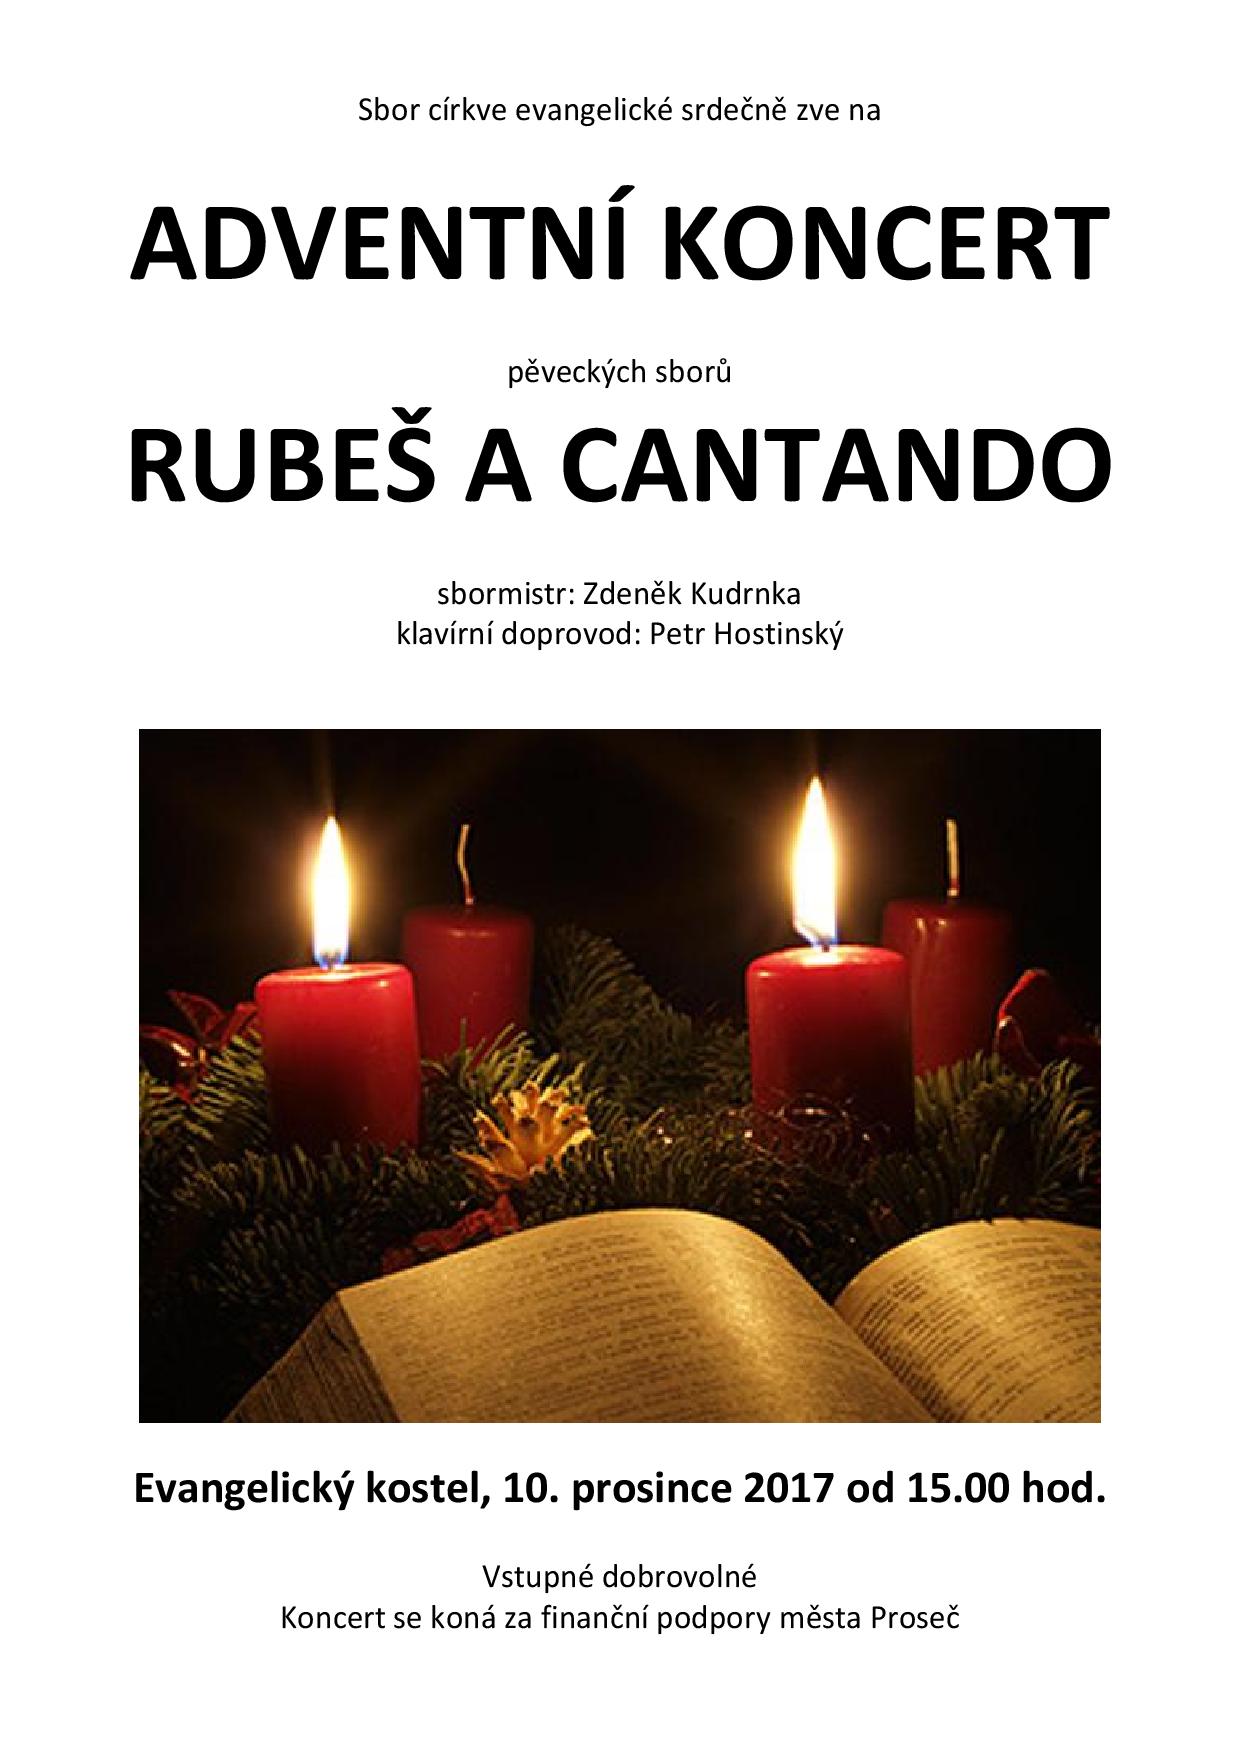 Adventní koncert pěveckých sborů Rubeš a Cantando